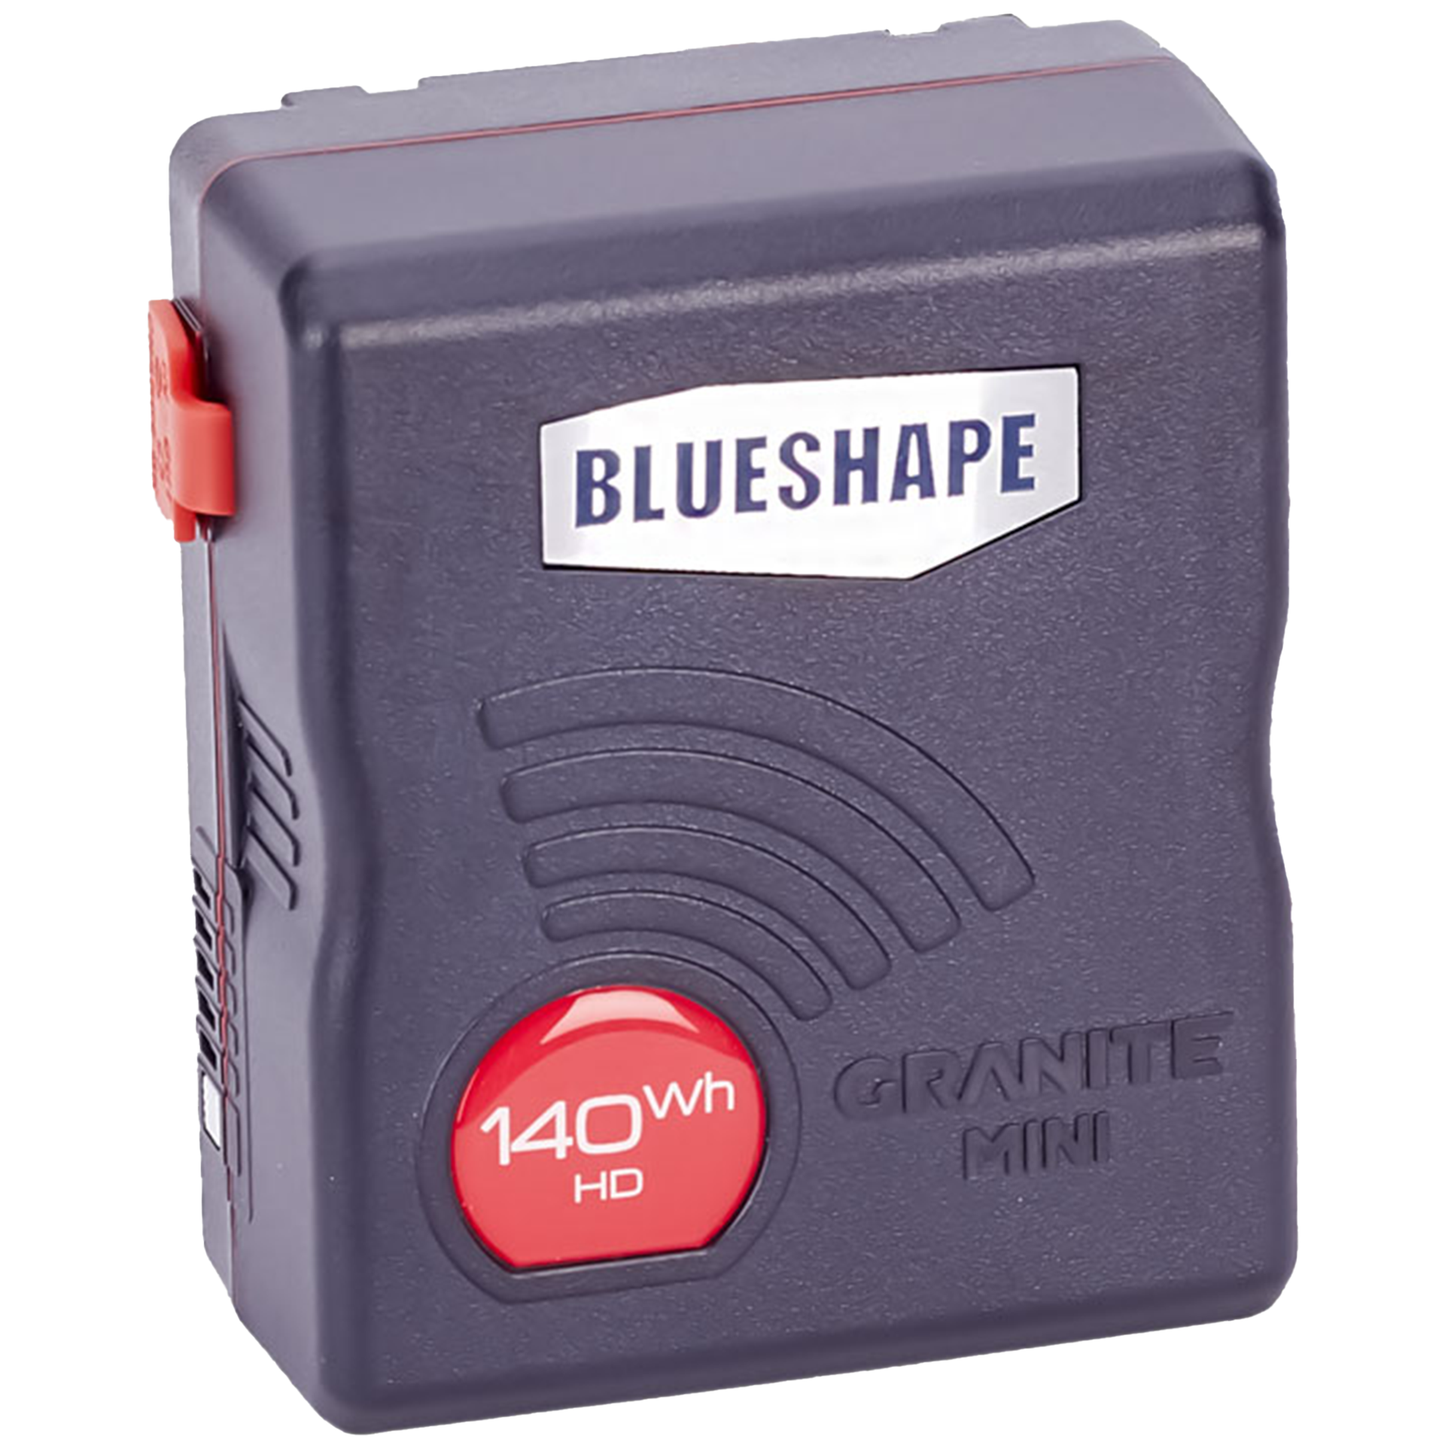 Blueshape Granite Mini 140Wh